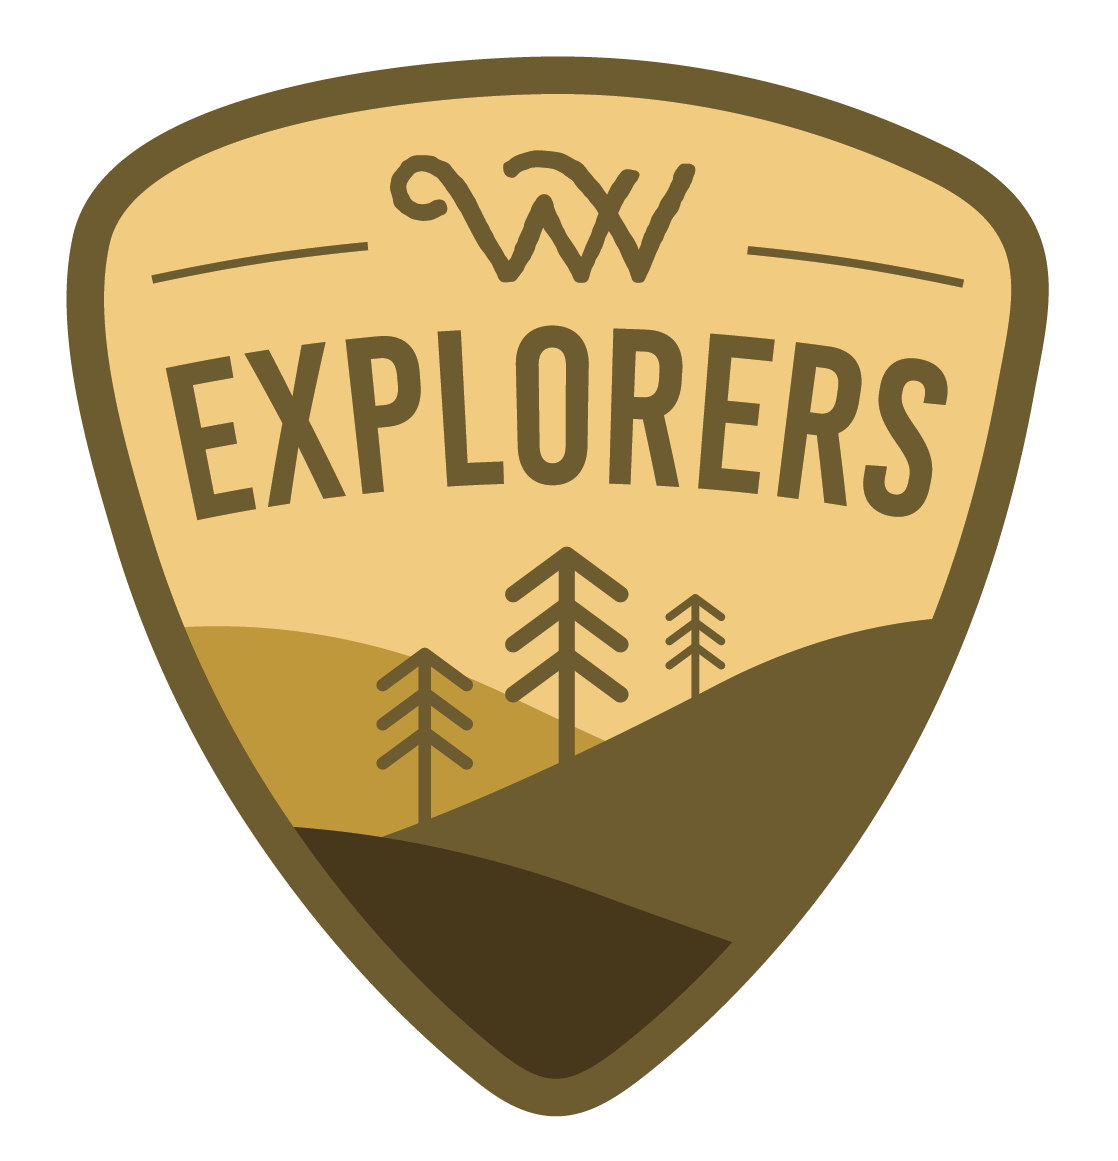 Almost Heaven West Virginia Logo - Explorer's Blog